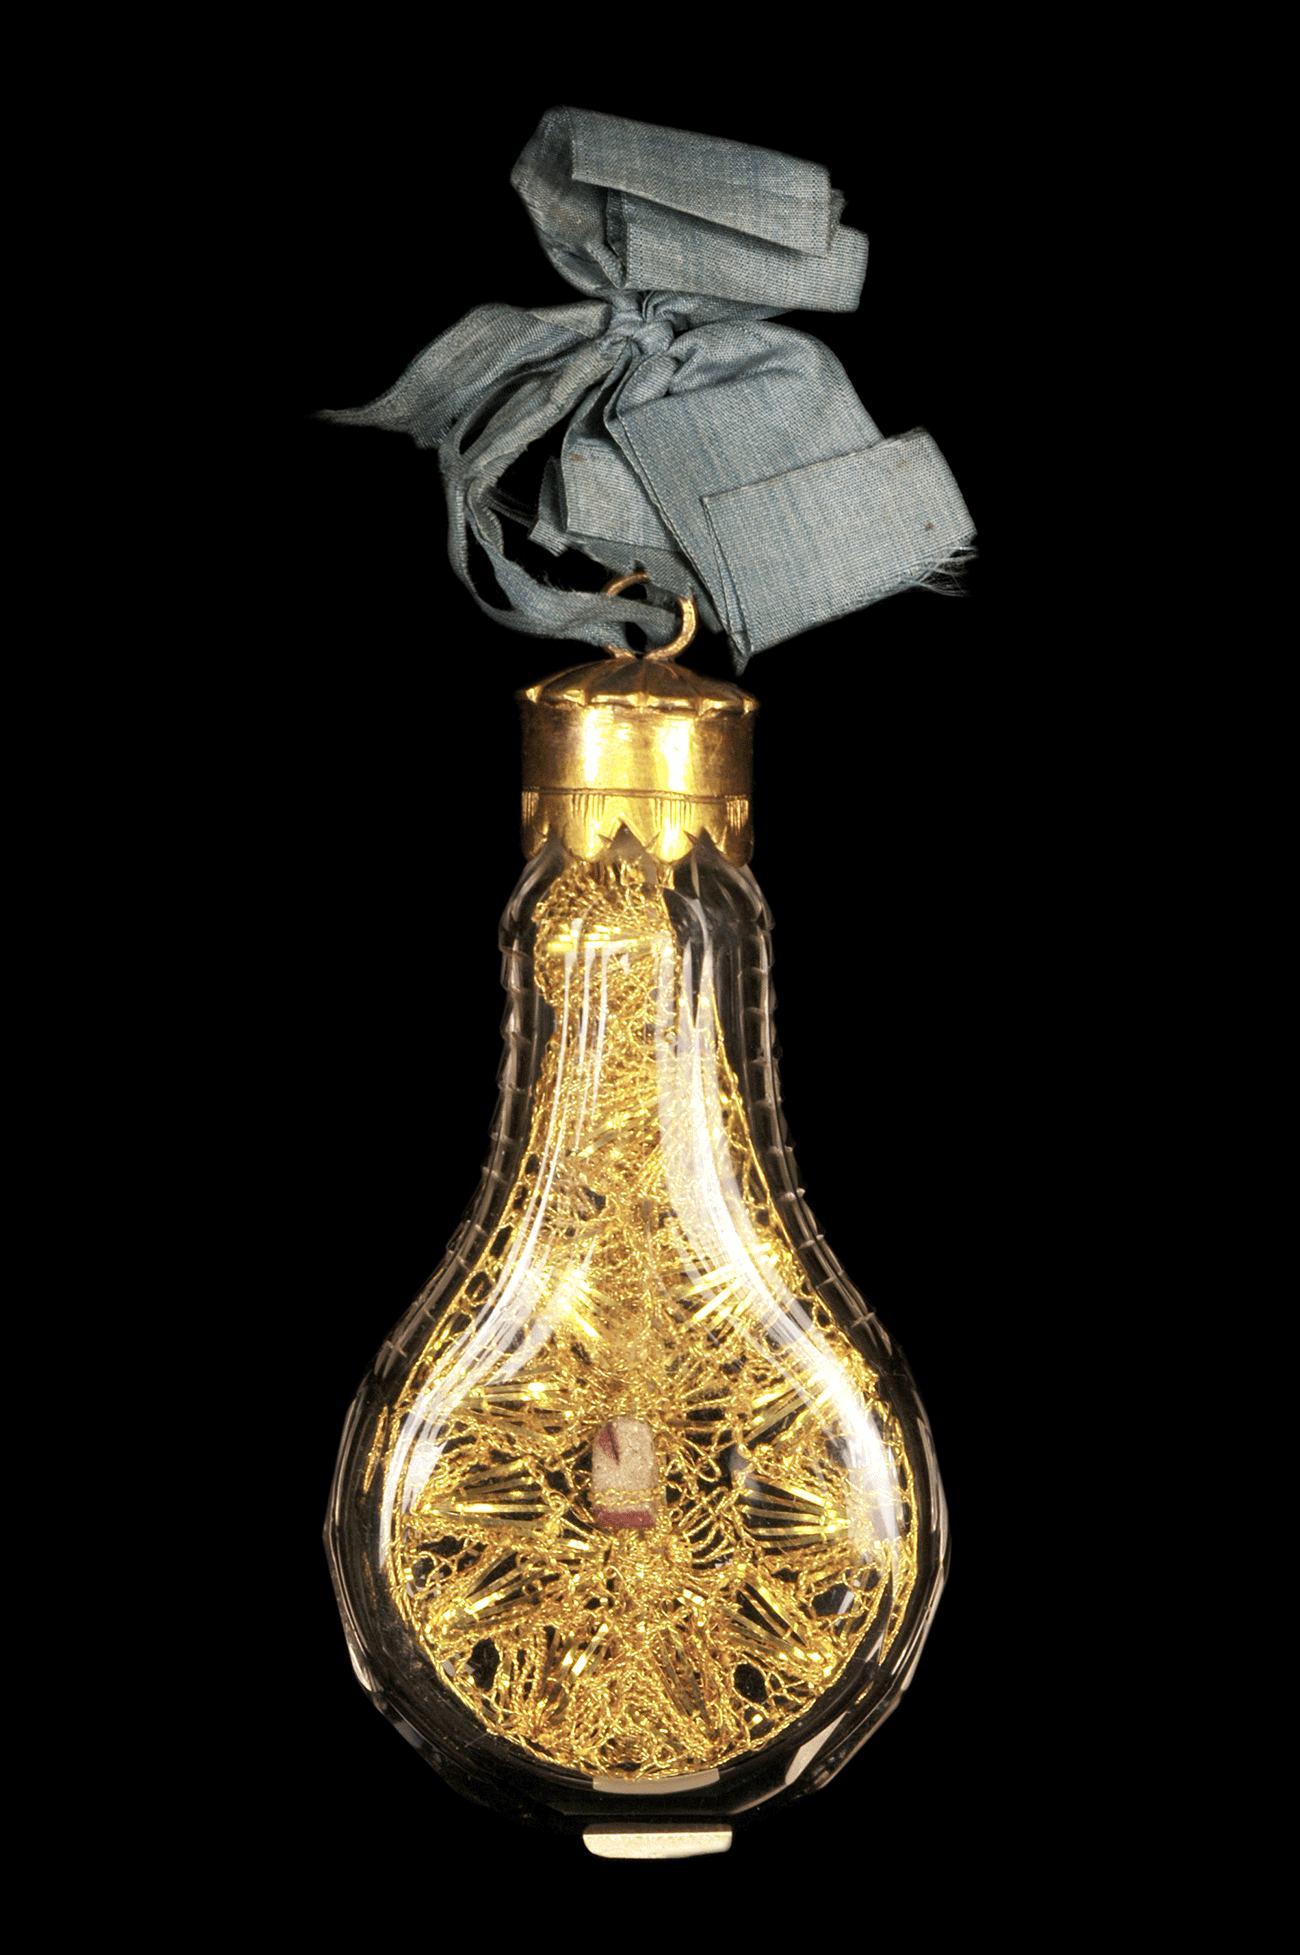 Flacon-reliquaire, République tchèque, Prague, cristal, fil d'or, laiton, soie 10,1 cm x 4,4cm - Mucem, Marseille © Mucem